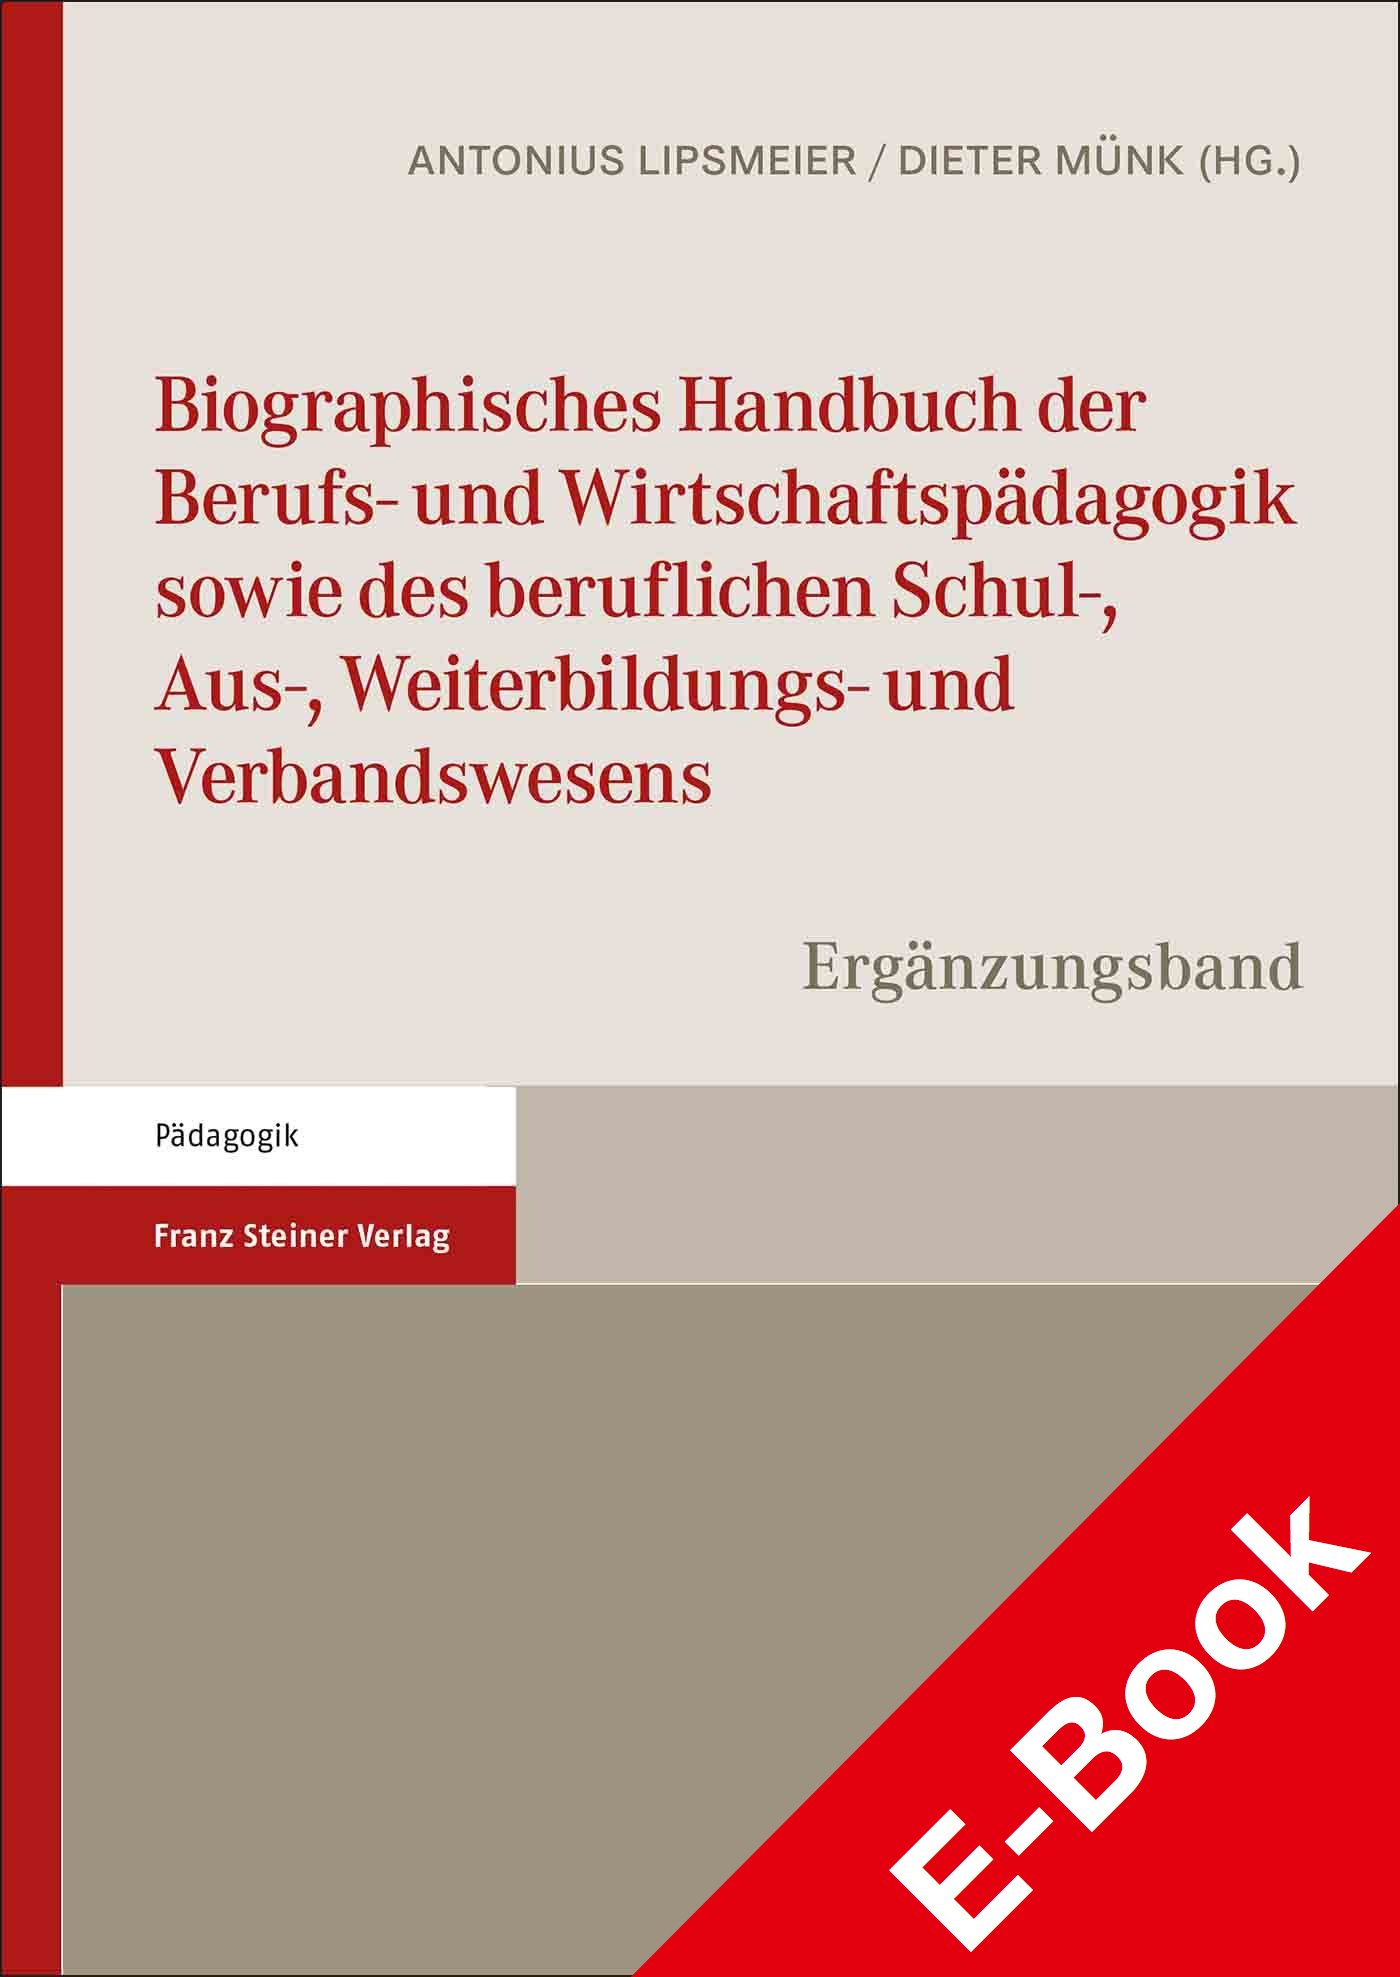 Biographisches Handbuch der Berufs- und Wirtschaftspädagogik sowie des beruflichen Schul-, Aus-, Weiterbildungs- und Verbandswesens